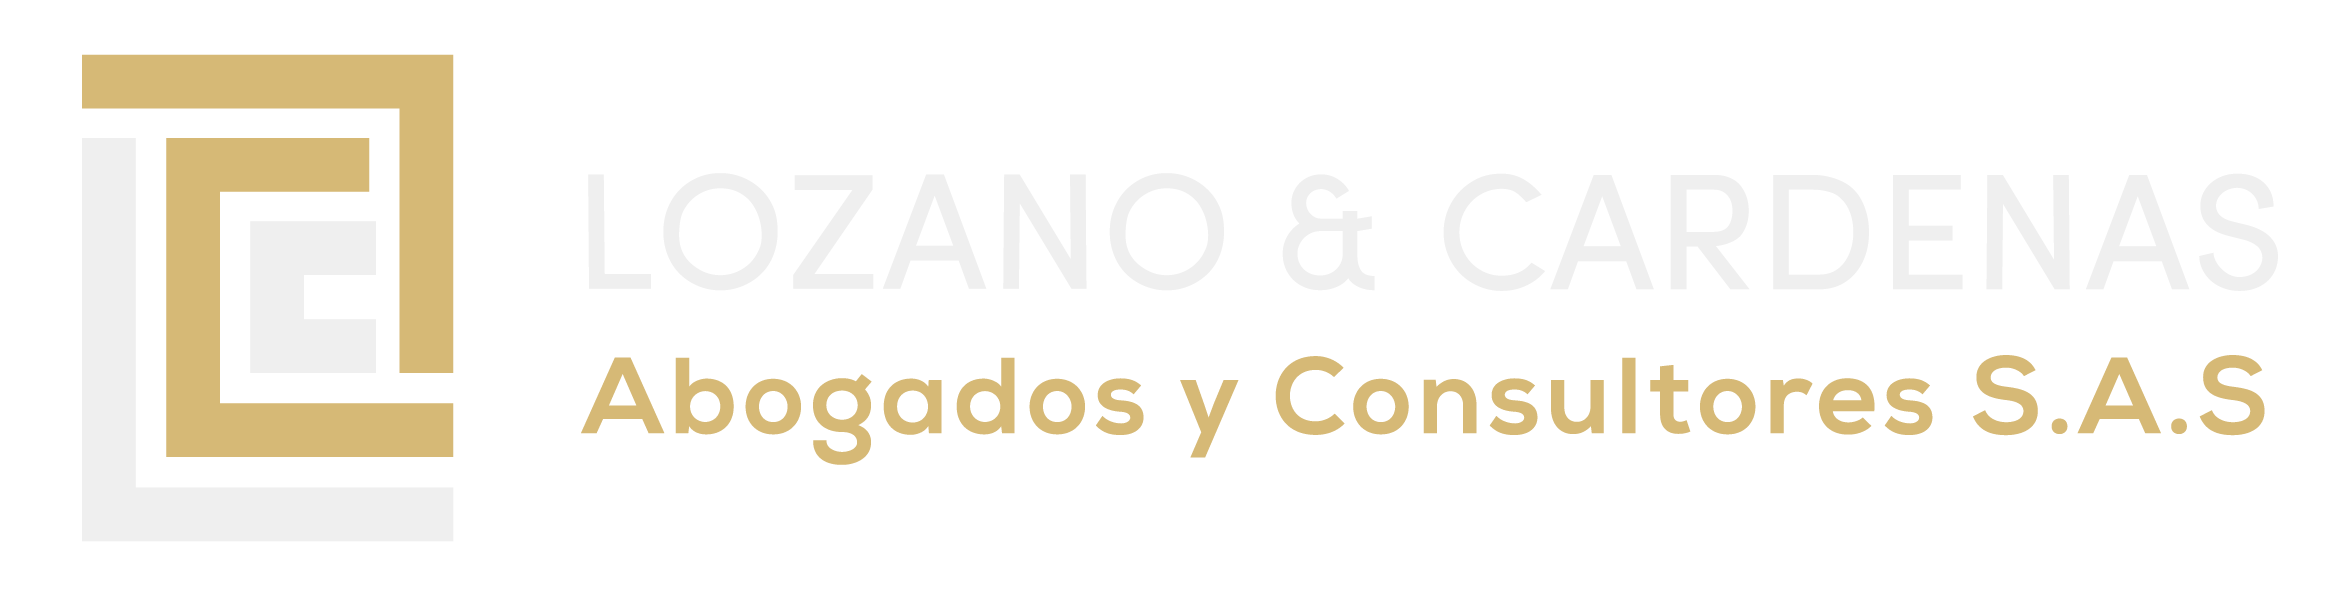 Lozano y Cardenas Abogados y Consultores SAS